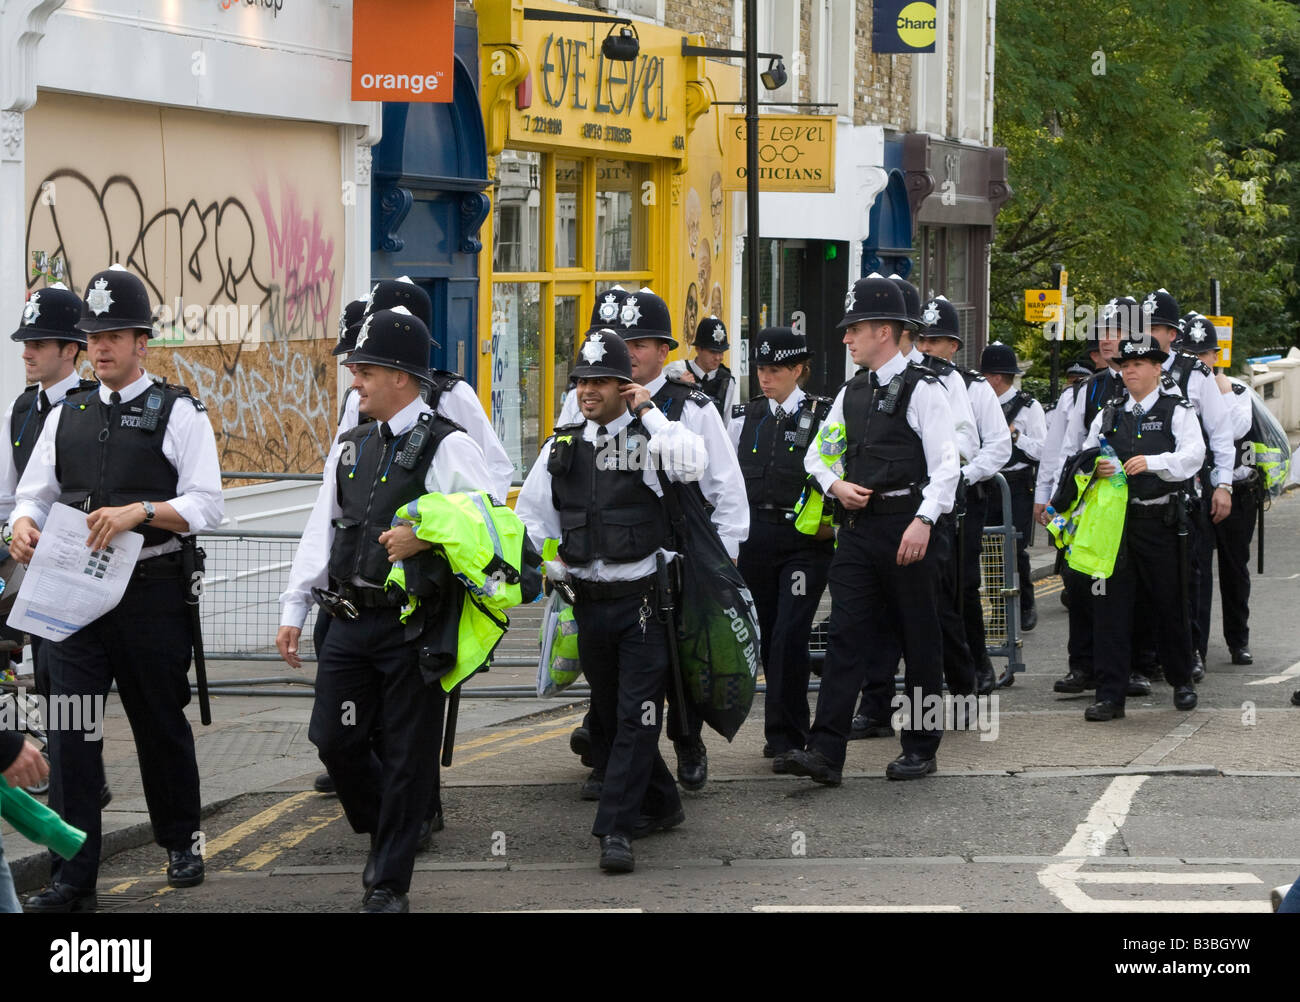 Polizei auf den Straßen von London Notting Hill auf dem Jahrmarkt Stockfoto